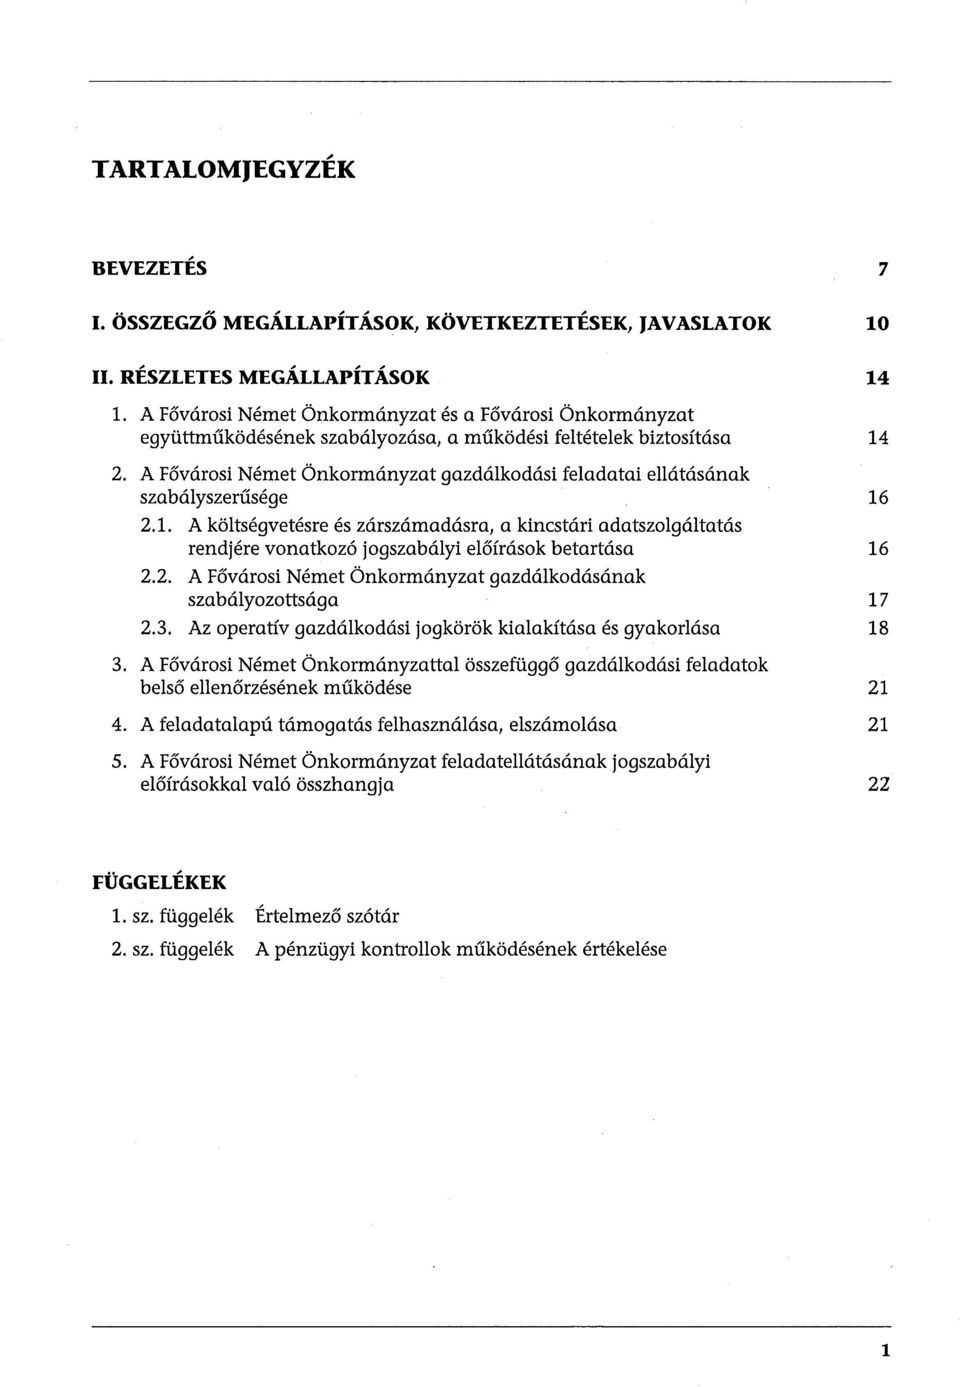 A Fővárosi Német Önkormányzat gazdálkodási feladatai ellátásának szabályszerűsége 2.1.